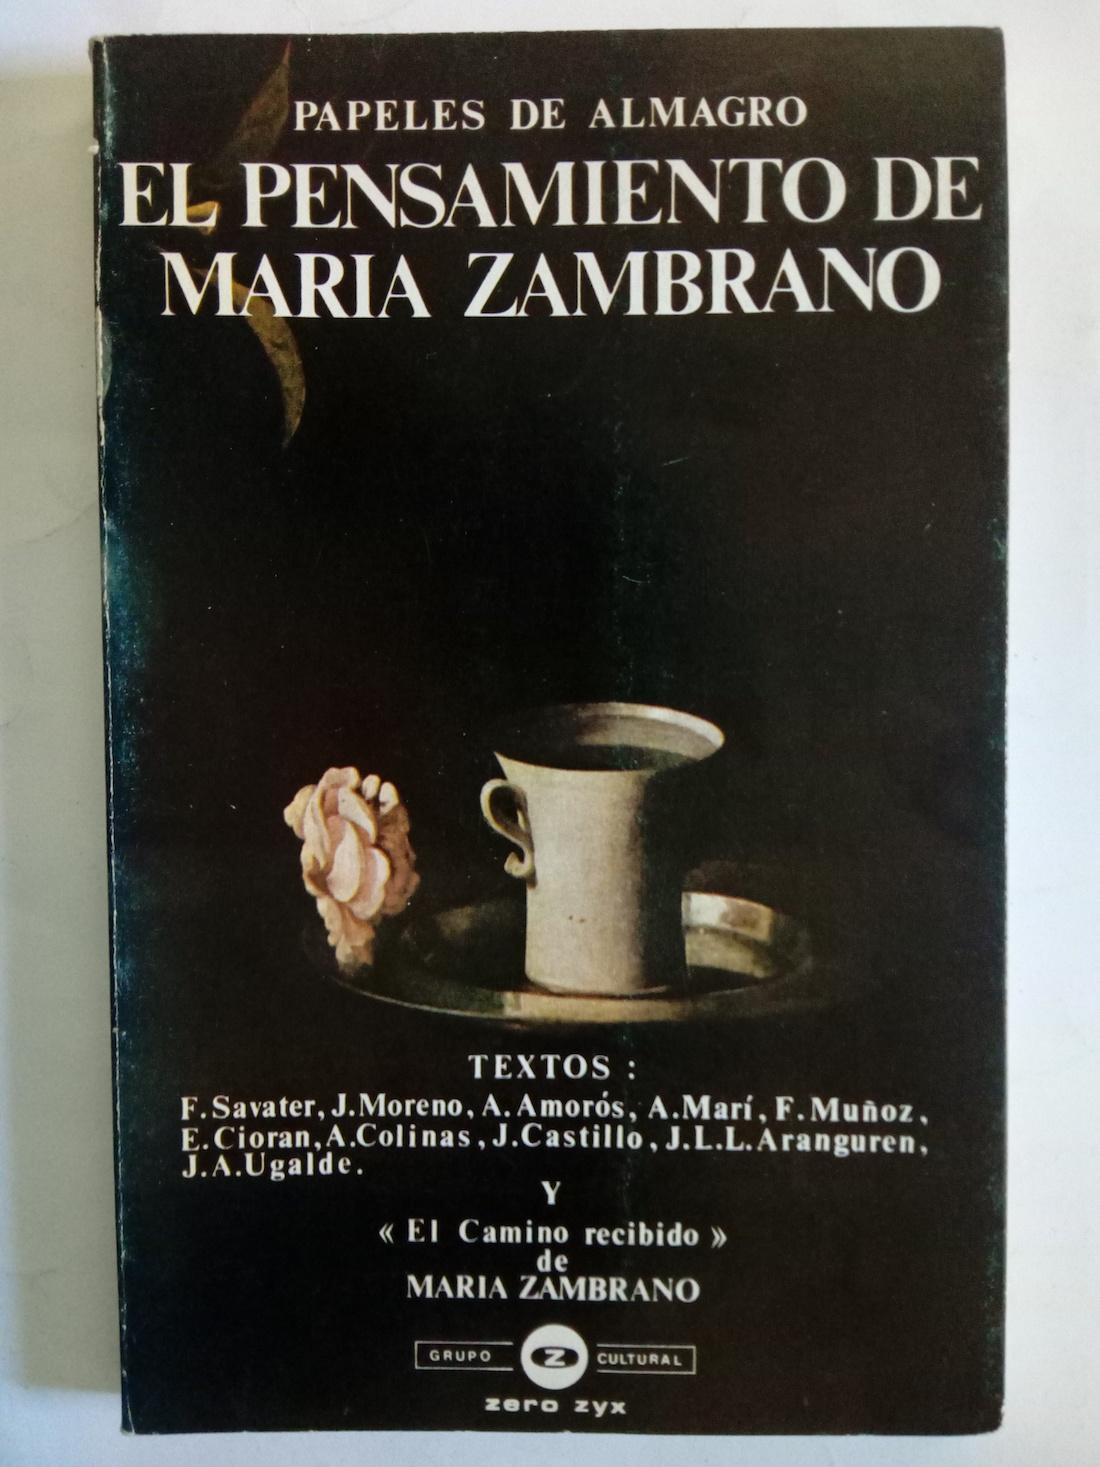 Papeles de Almagro. El pensamiento de Zambrano - María Zambrano, Fernando Savater, Andrés Amorós, E. Cioran et al.